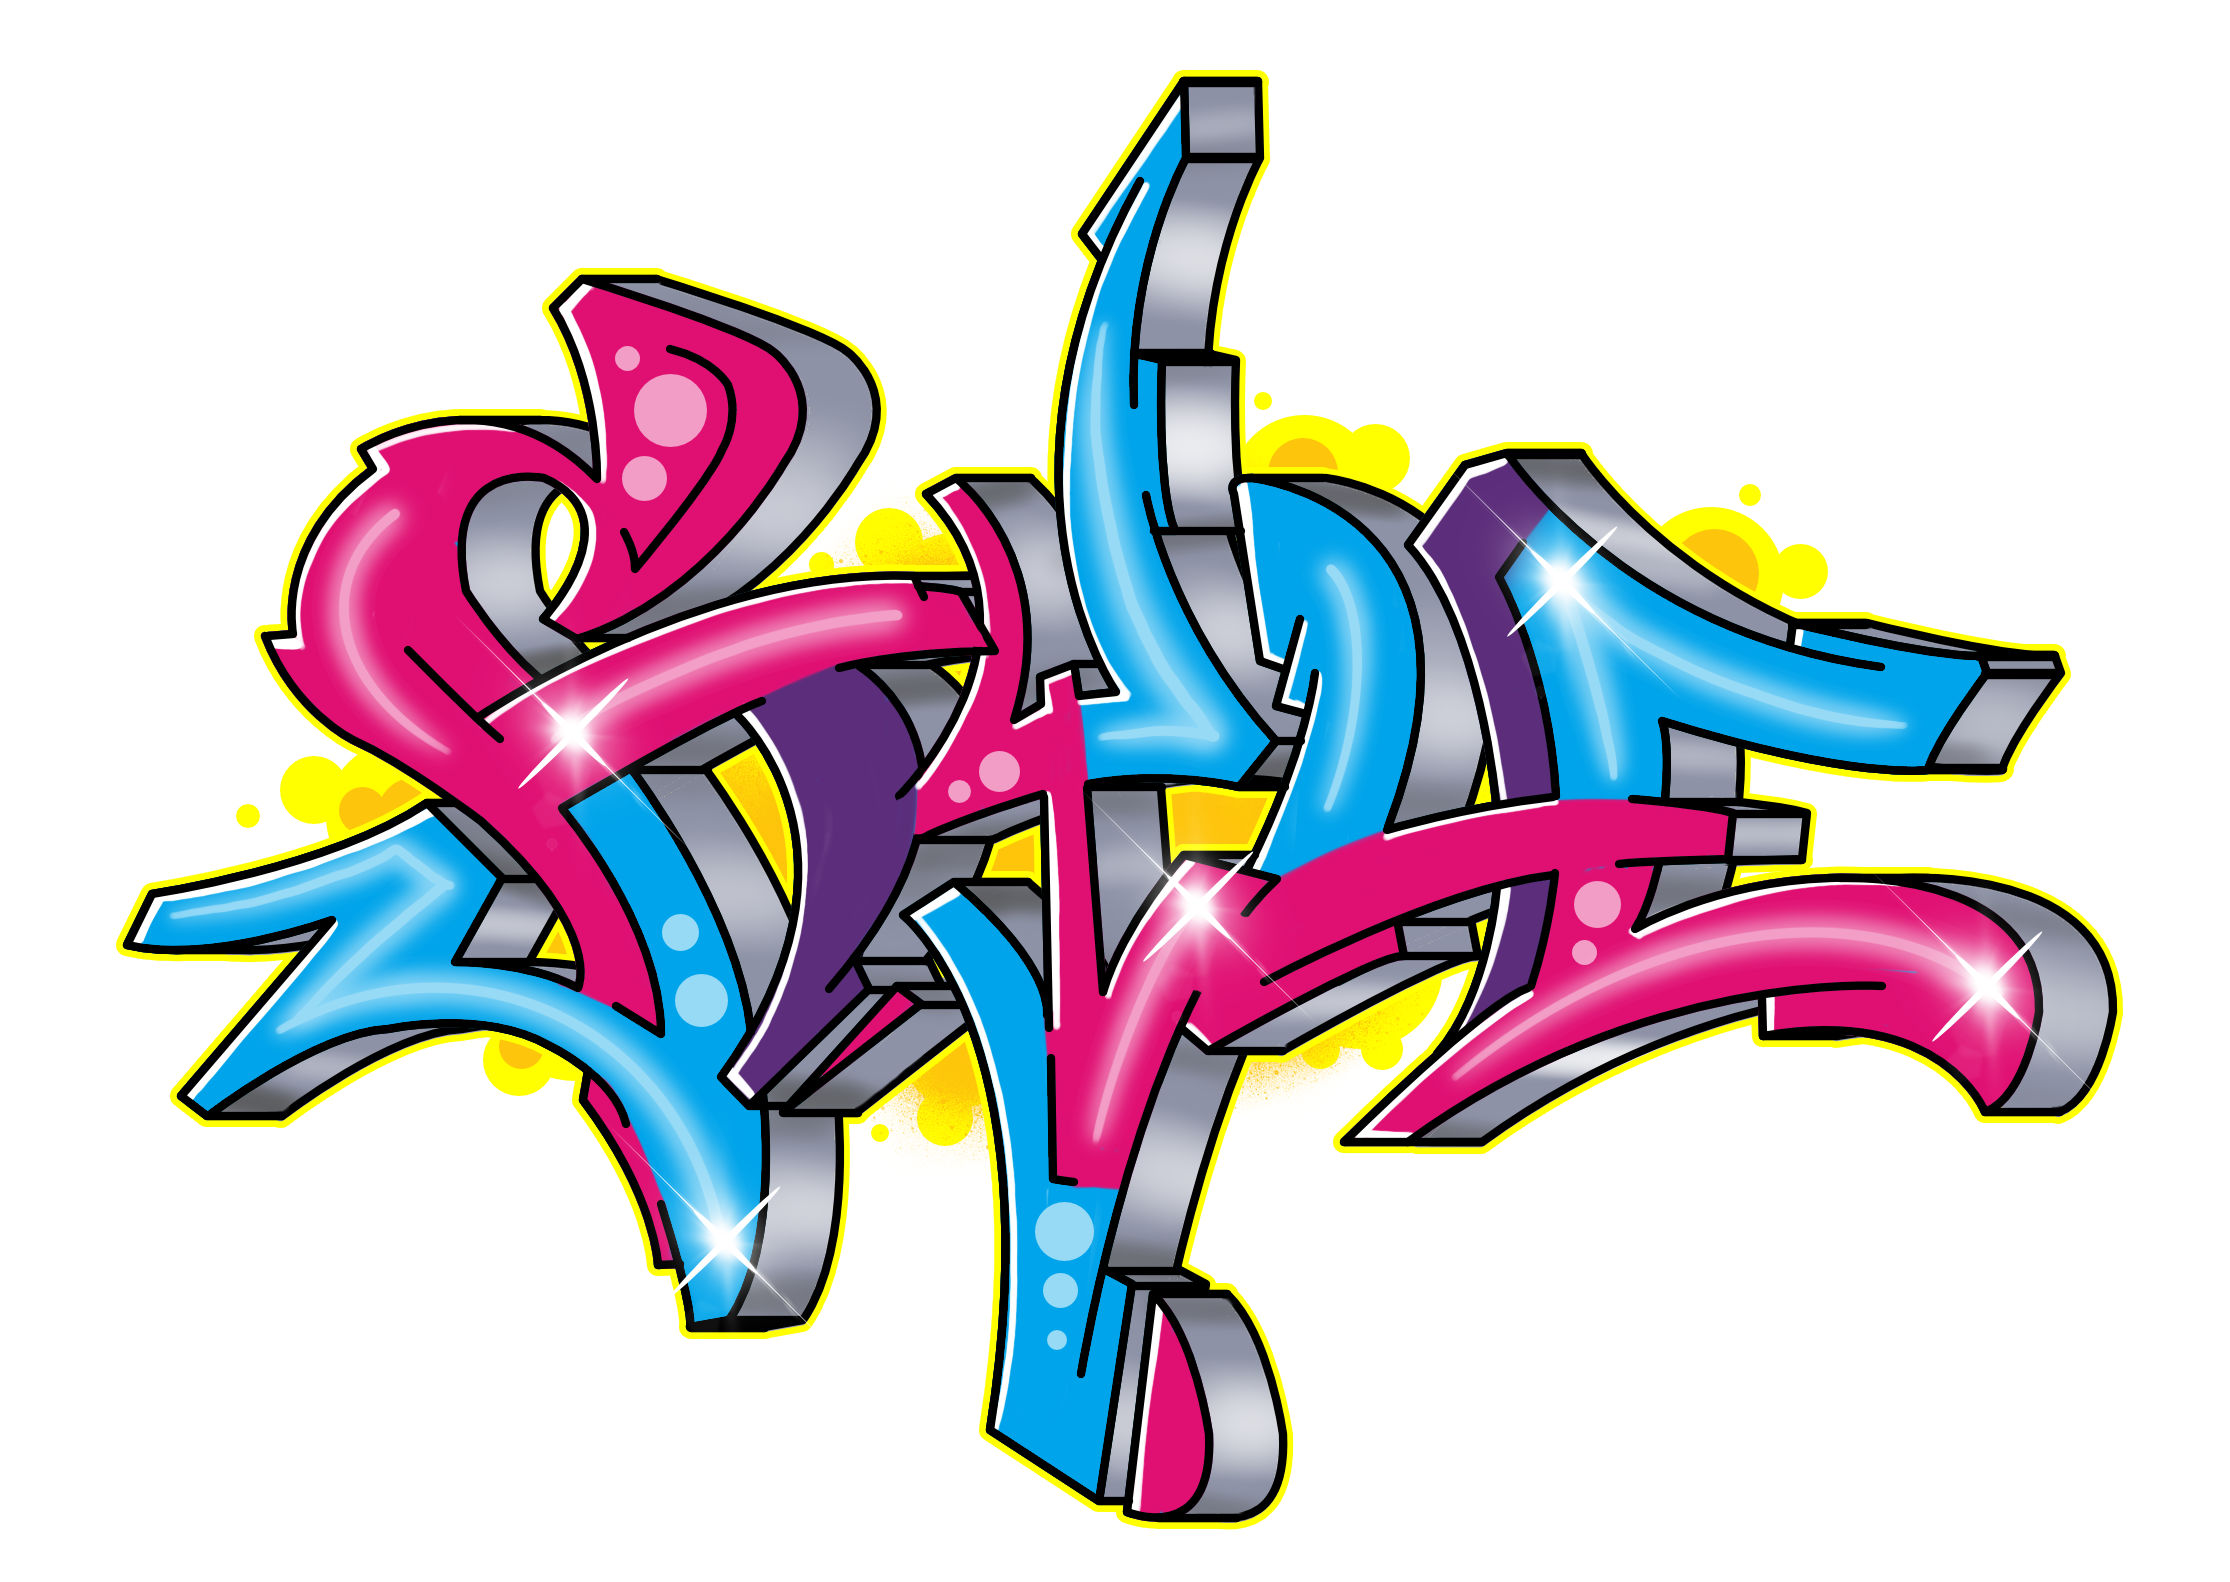 “Style” als Graffiti in 15 Schritten zeichen